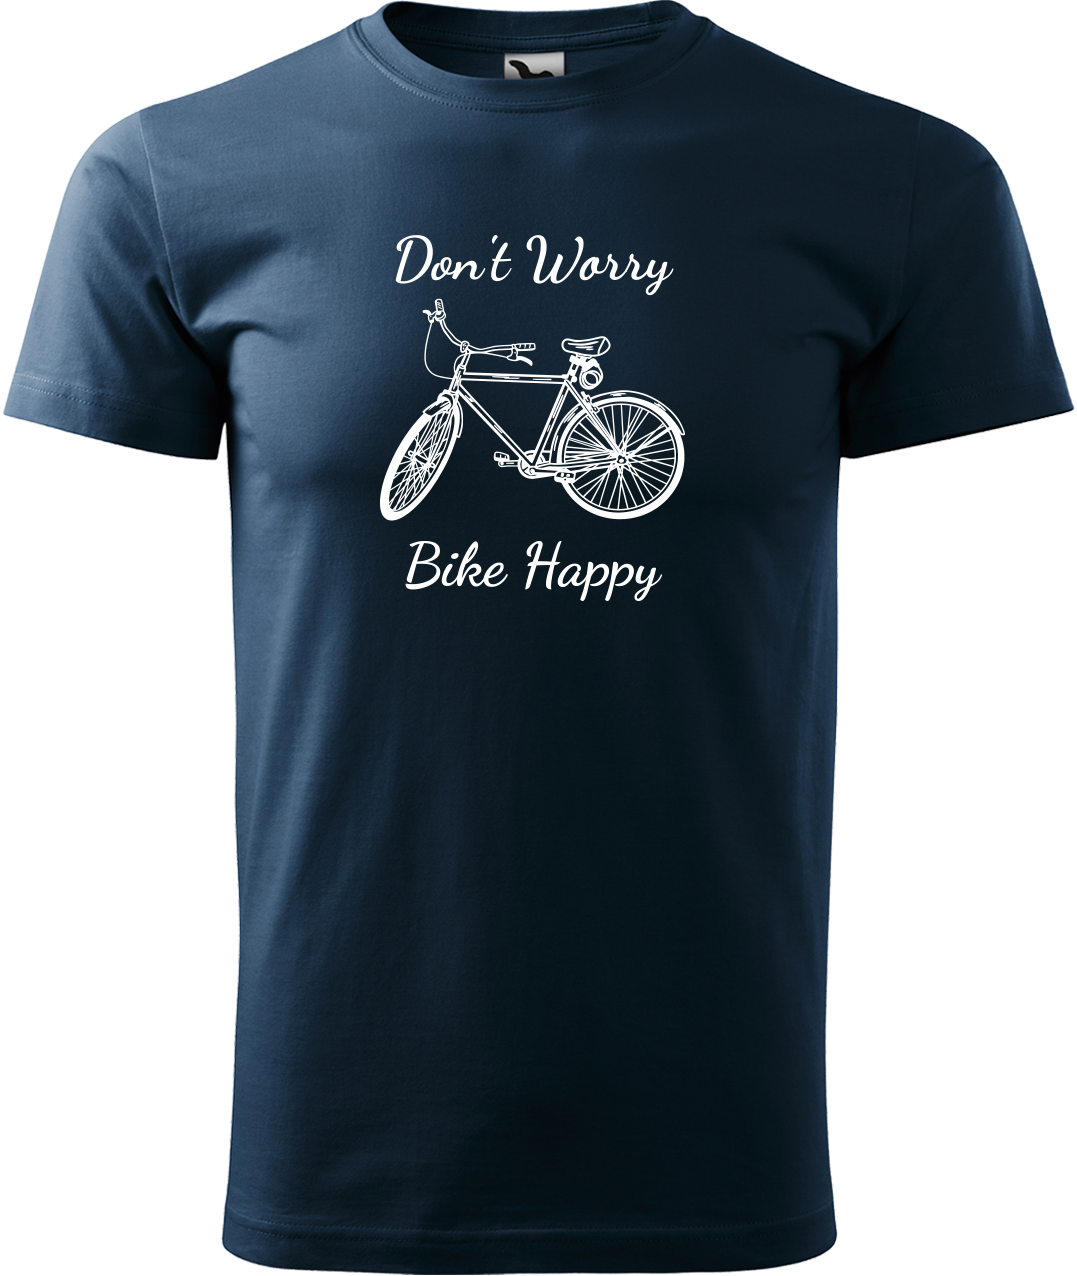 Pánské tričko s kolem - Don't Worry Bike Happy Velikost: M, Barva: Námořní modrá (02)